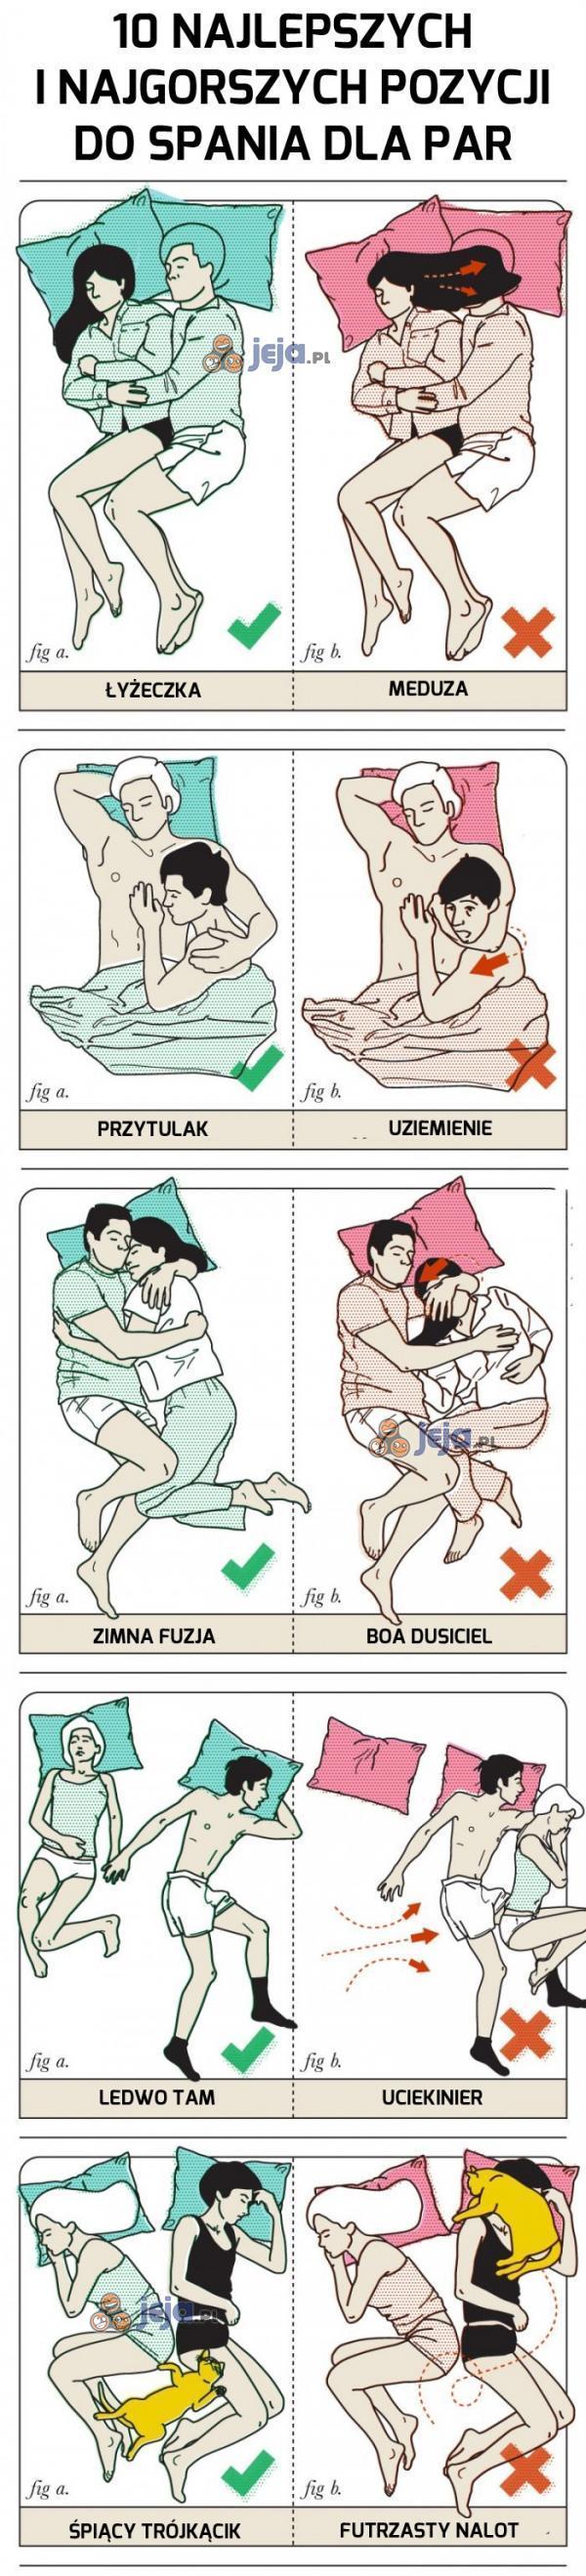 10 najlepszych i najgorszych pozycji do spania dla par